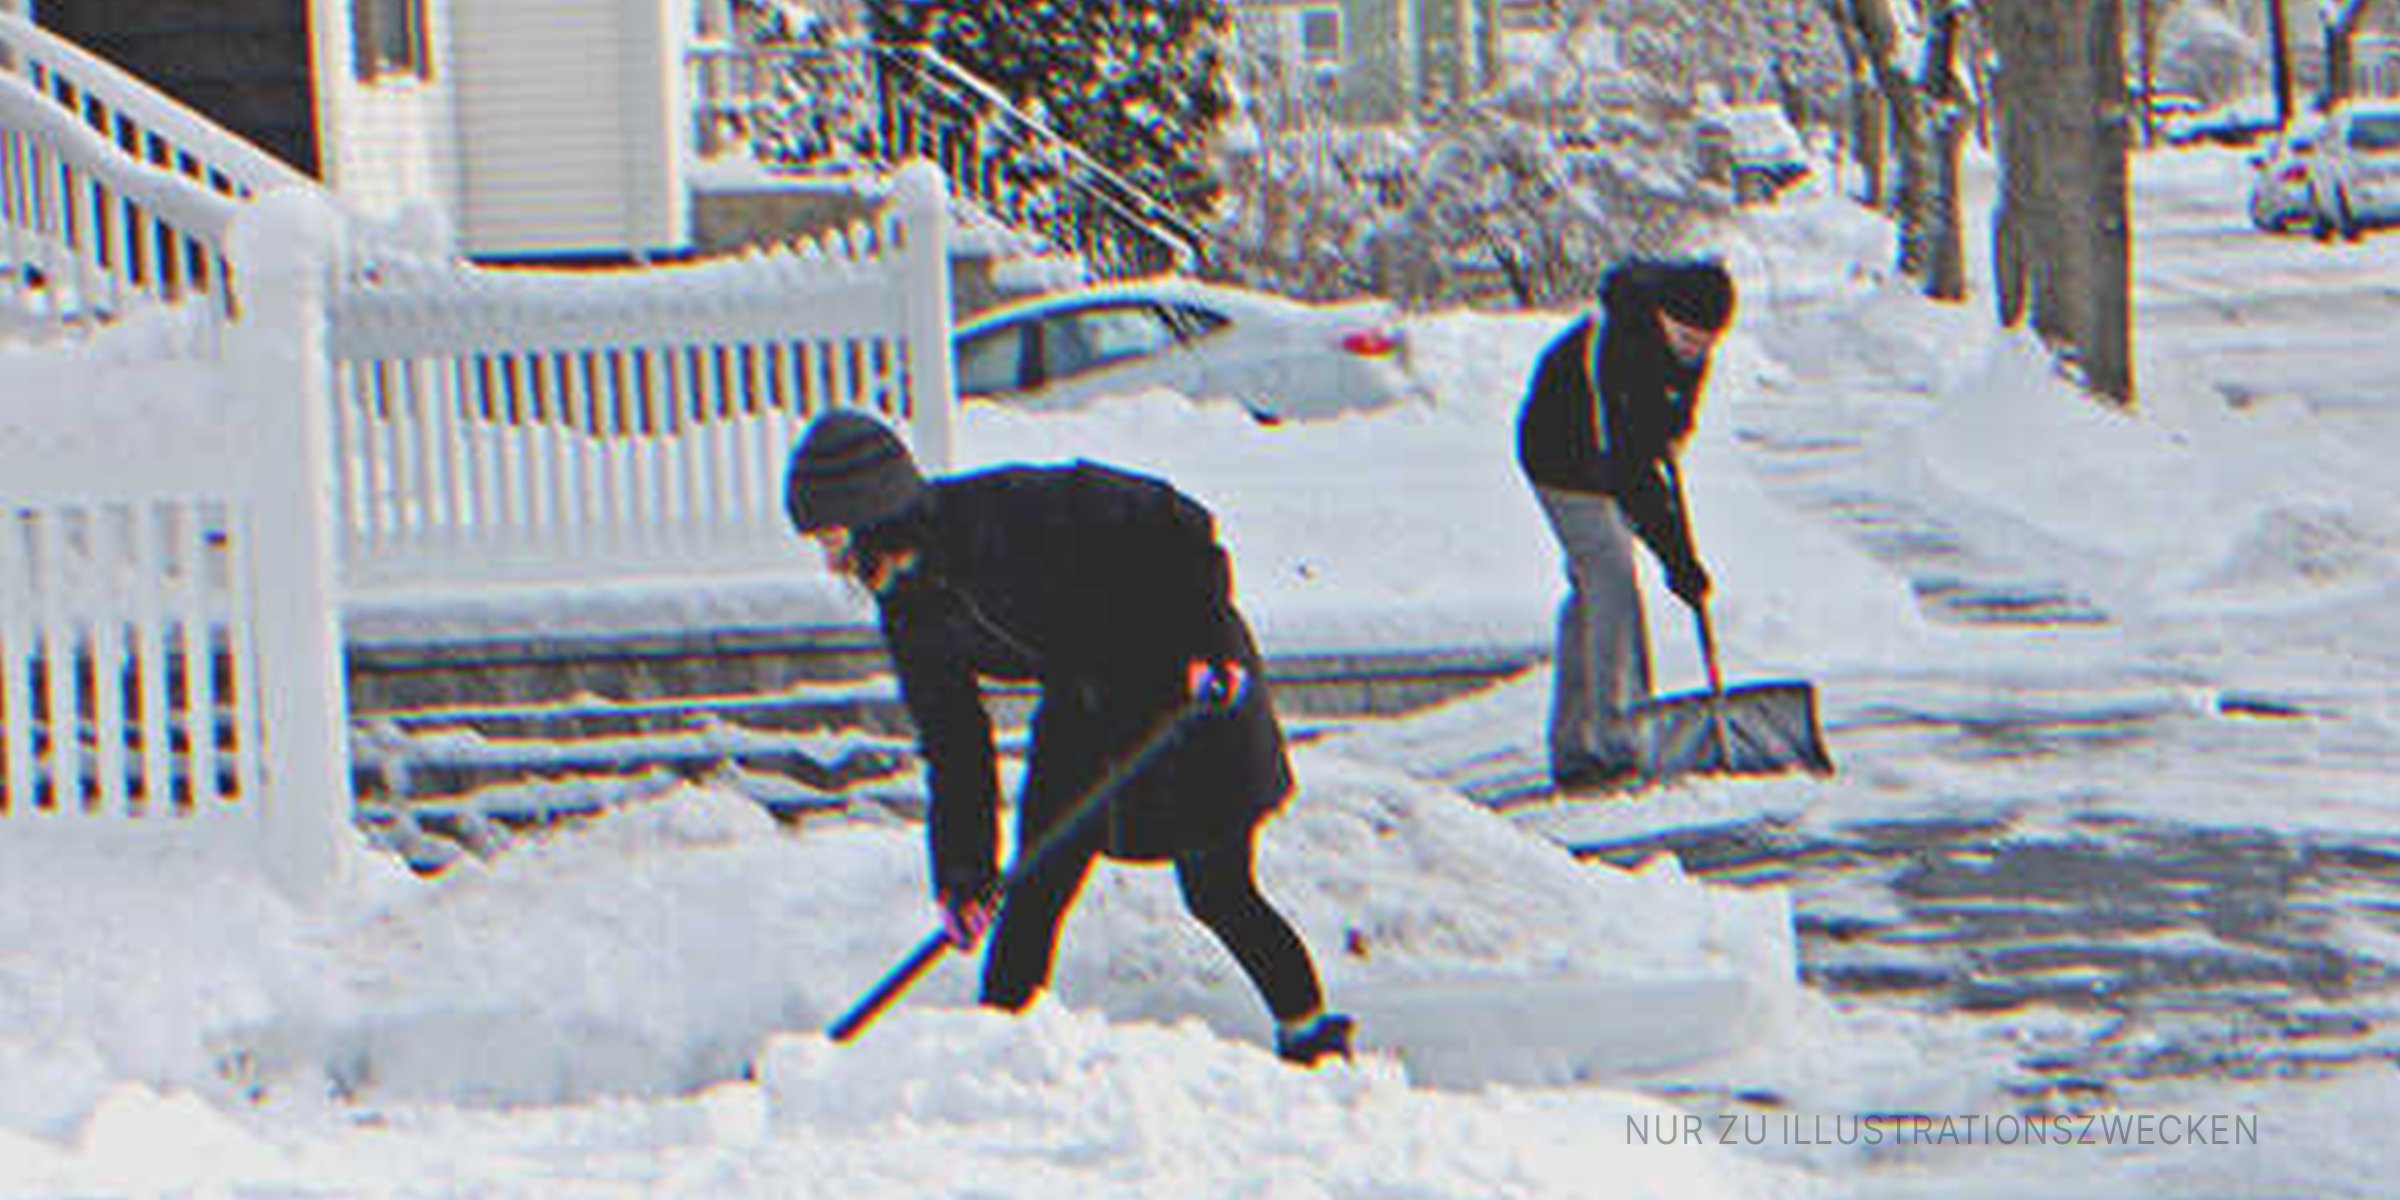 Zwei Männer schaufeln Schnee. | Quelle: Flickr / unnormalized (CC BY-SA 2.0)